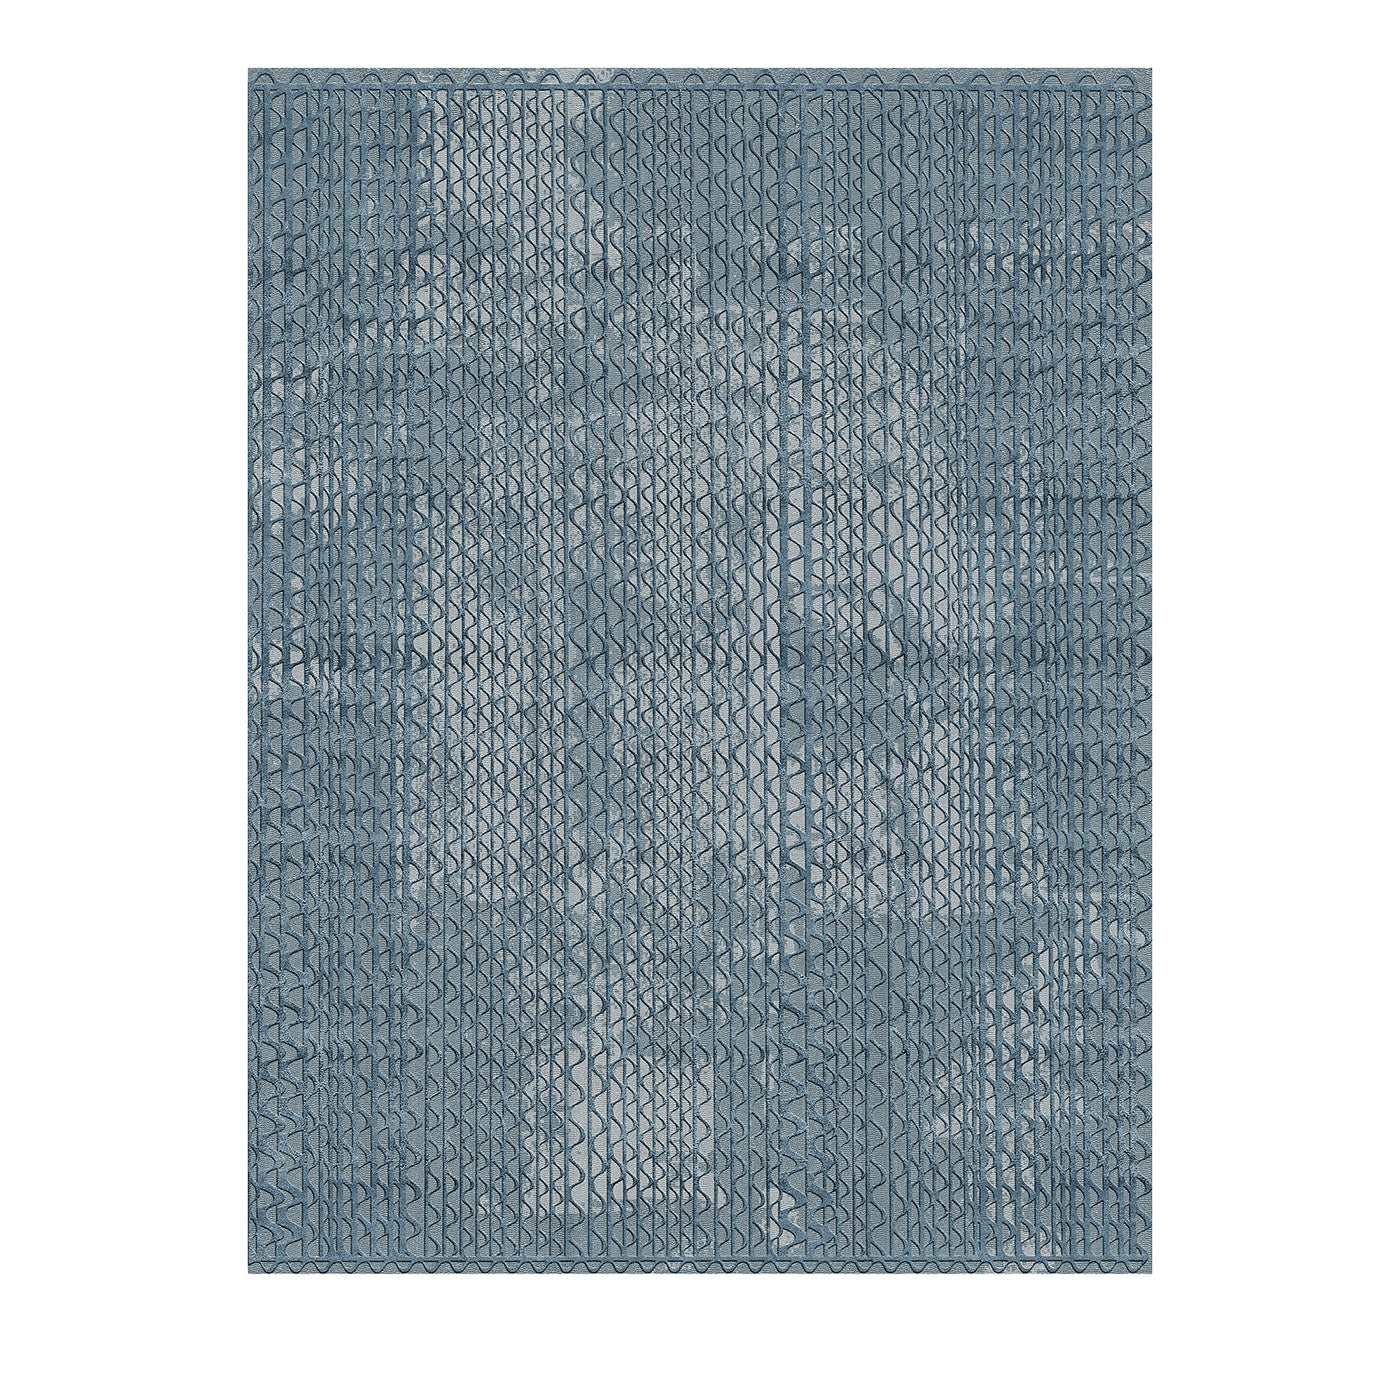 Triple Waves Rechteckiger Blauer Teppich von Lorenza Bozzoli  - Hauptansicht